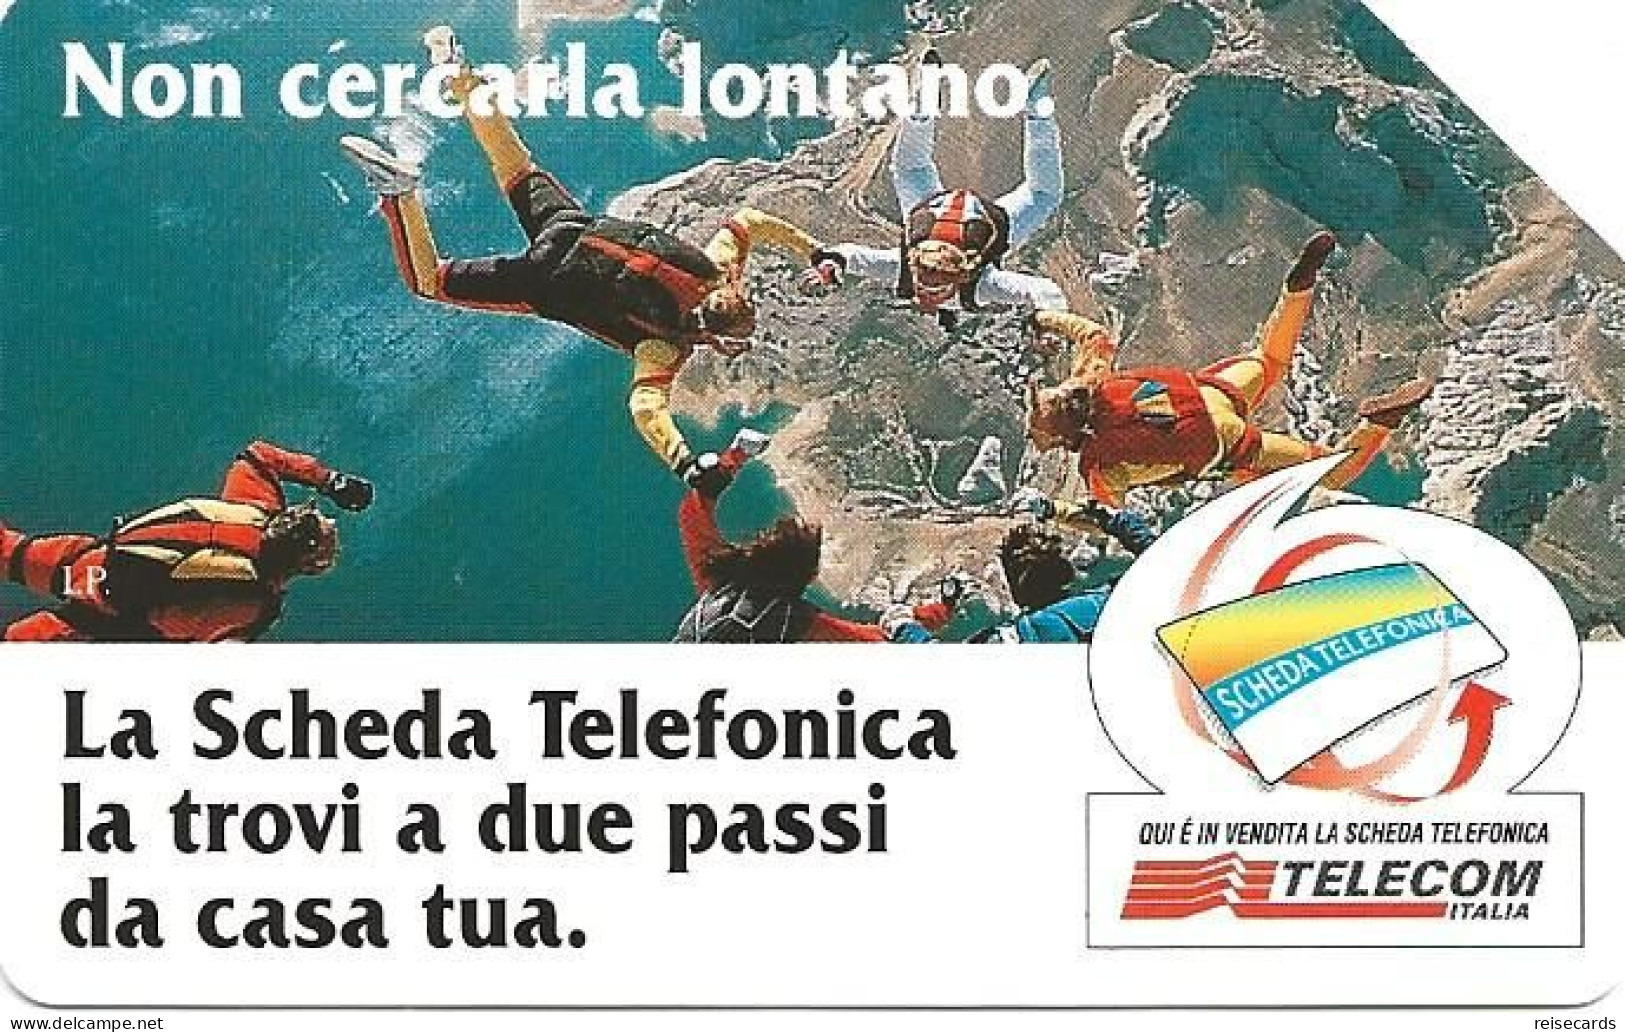 Italy: Telecom Italia - La Scheda Telefonica, Non Cercarla Lontano - Públicas  Publicitarias